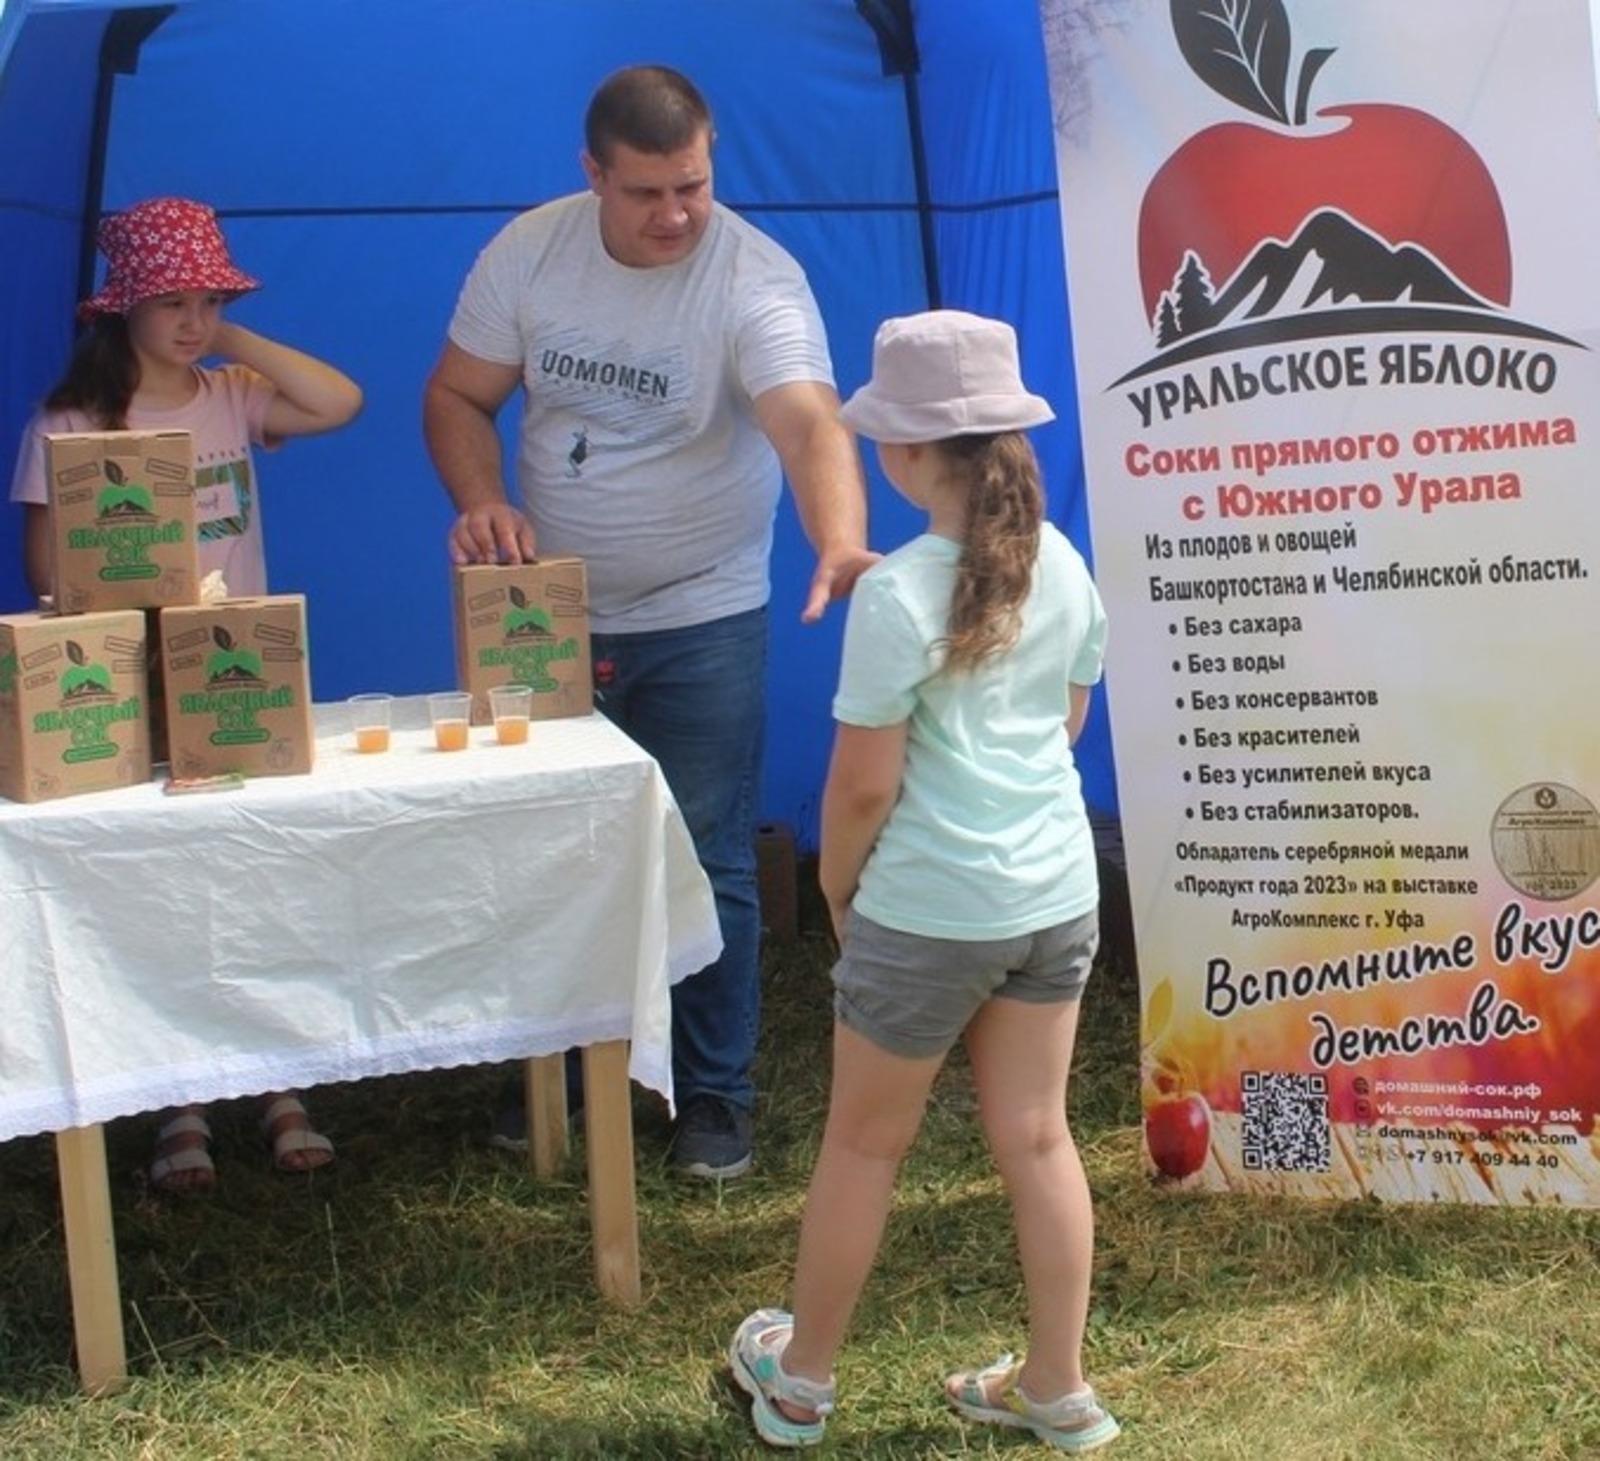 Сельхозкооператив «Уральское яблоко» в д. Майский Иглинского района производит натуральные соки из фруктов и овощей